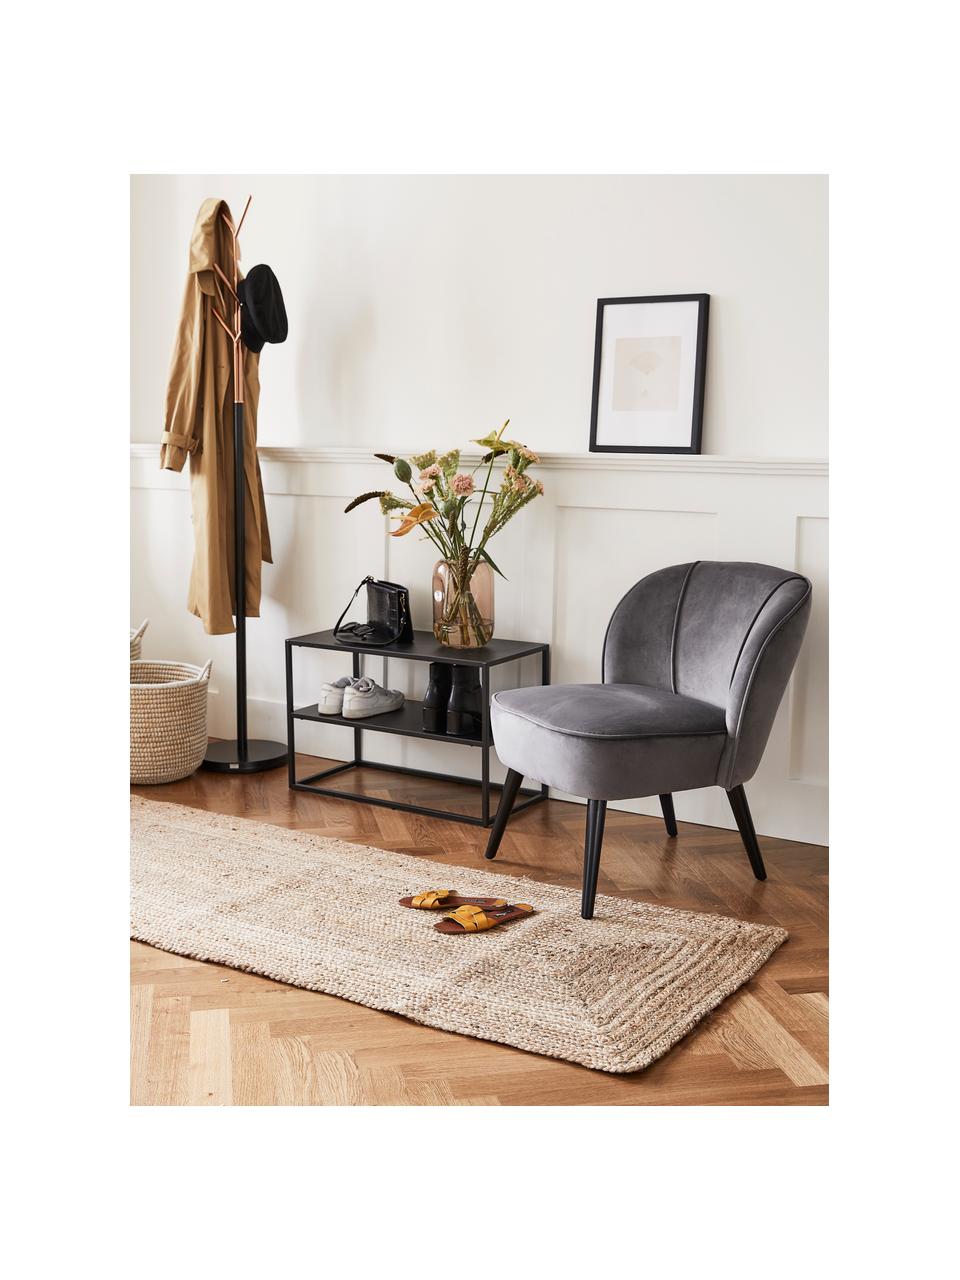 Fluwelen stoel Lucky, Bekleding: fluweel (polyester), Poten: rubberhout, gelakt, Bekleding: donkergrijs. Poten: zwart, B 59 x D 68 cm